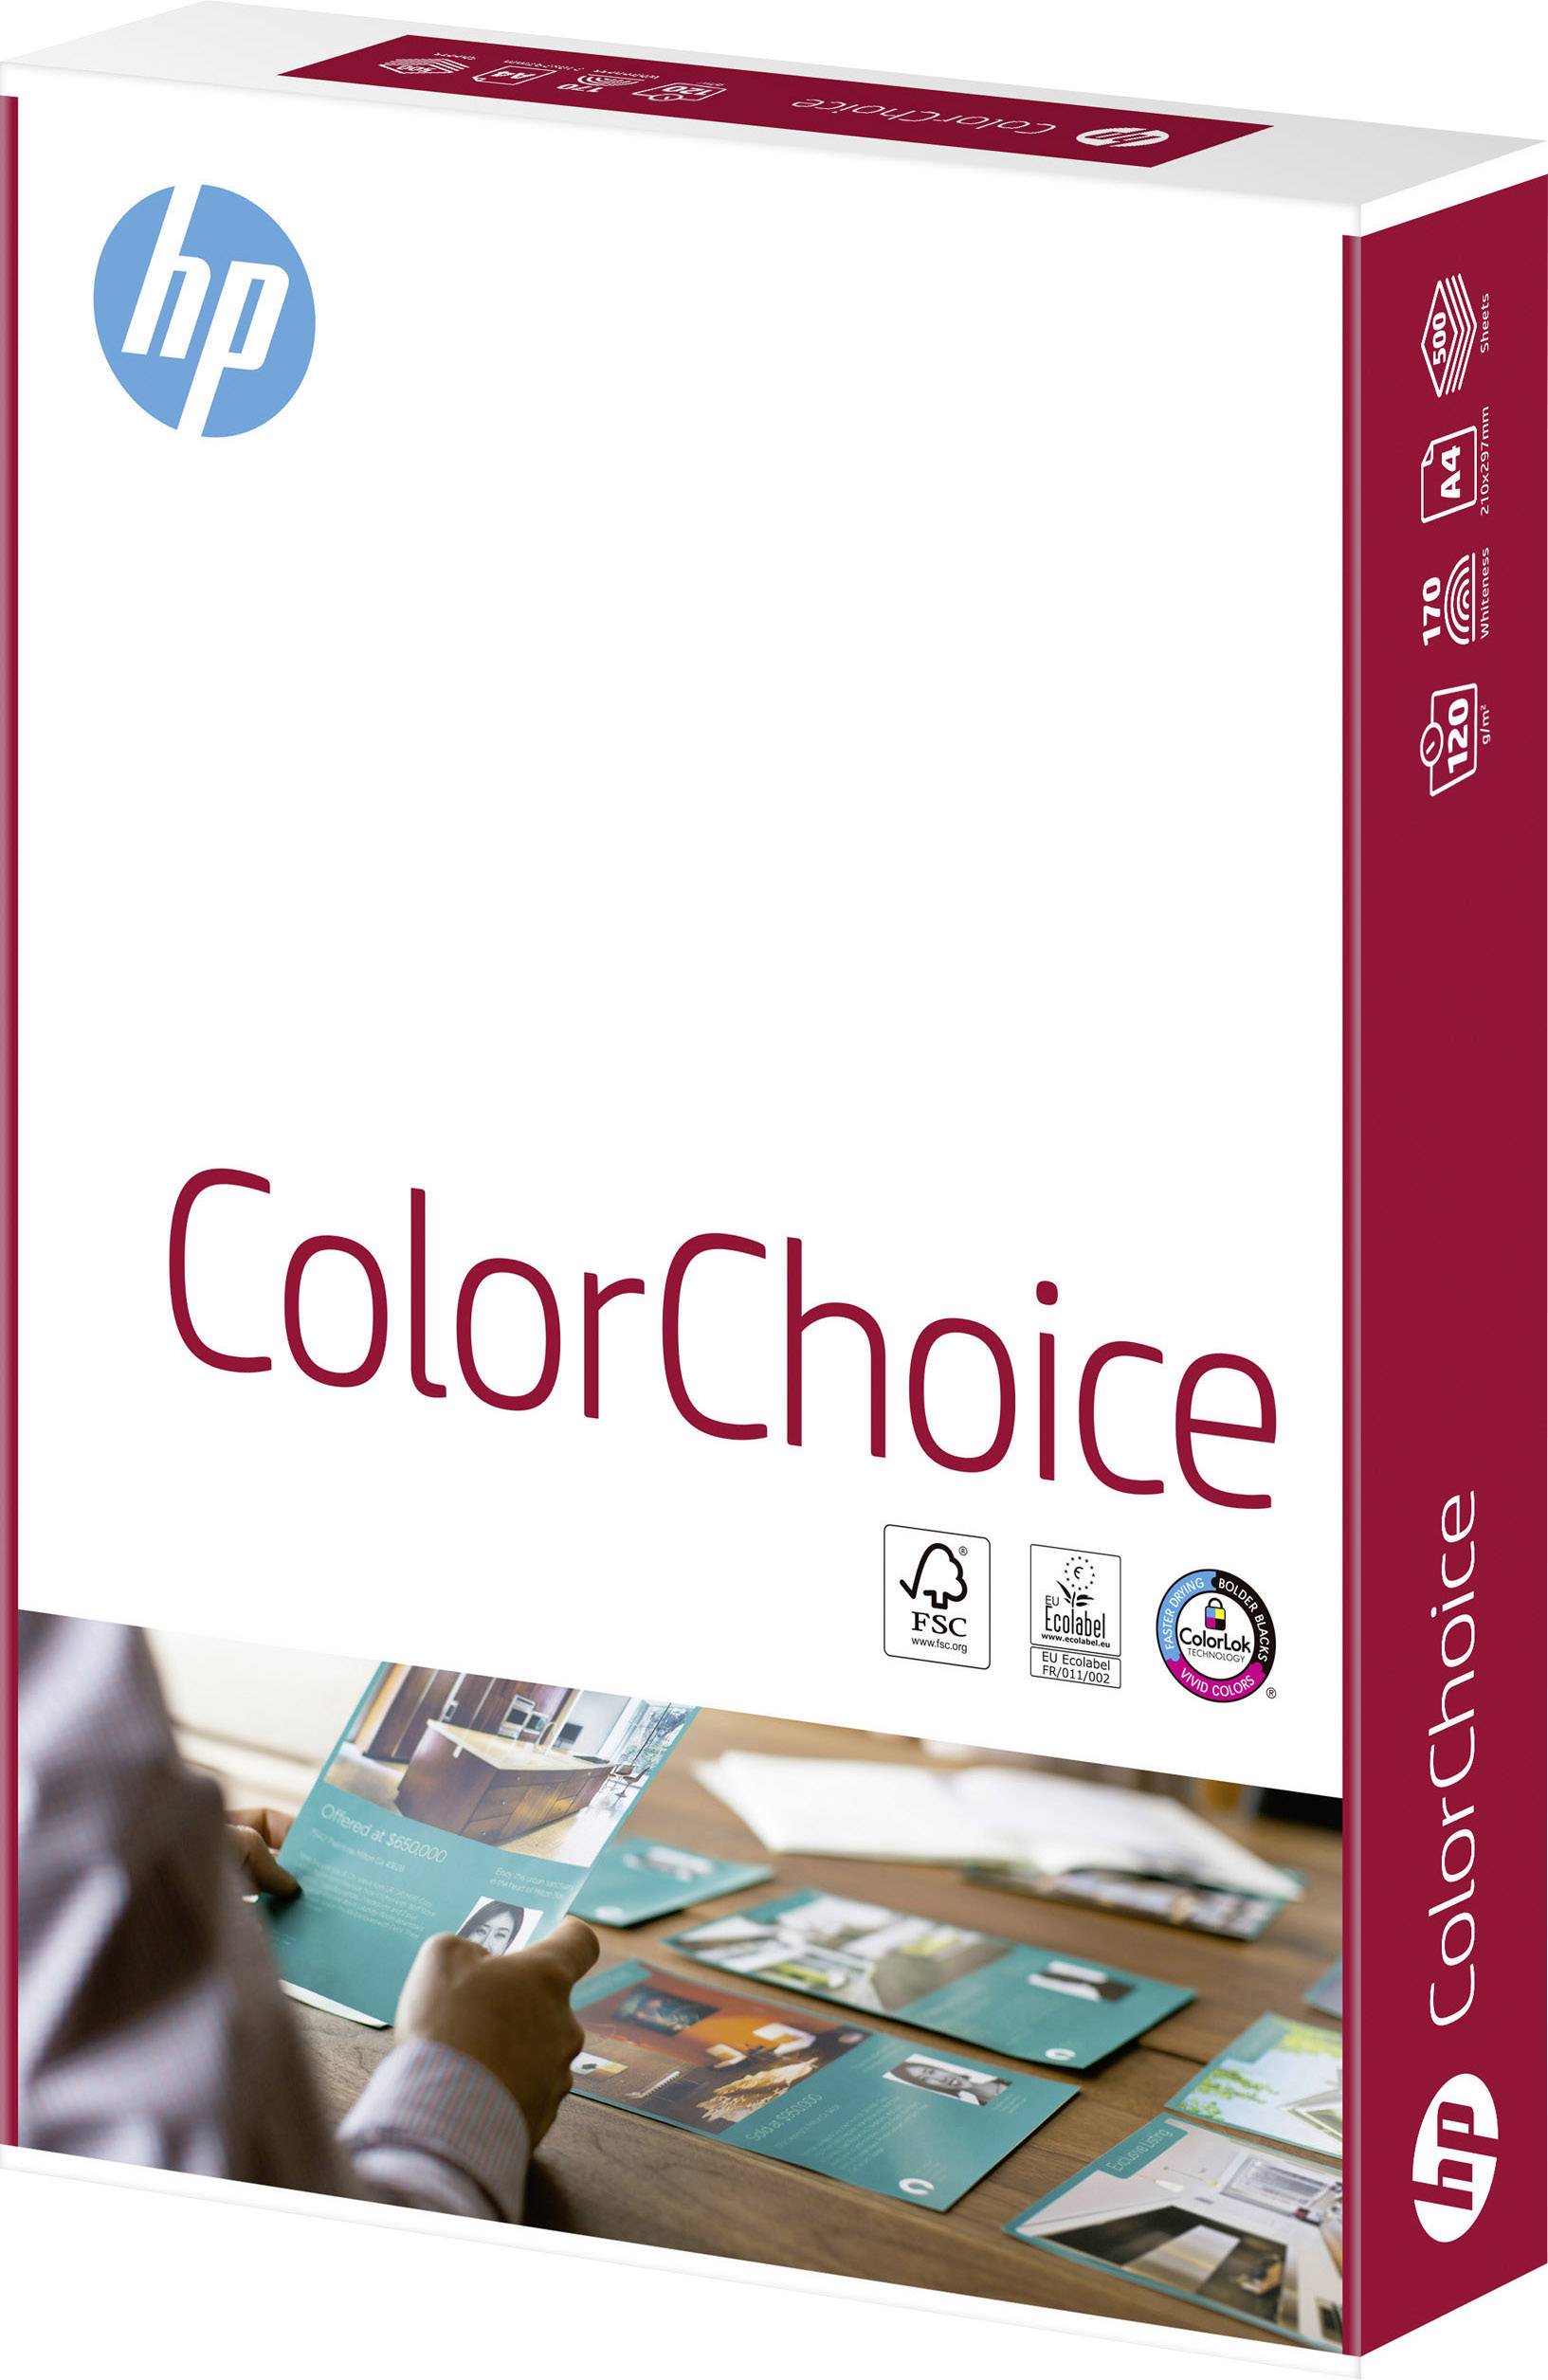 Color Choice CHP753 Laser printer paper A4 120 g/m² 250 White | Conrad.com